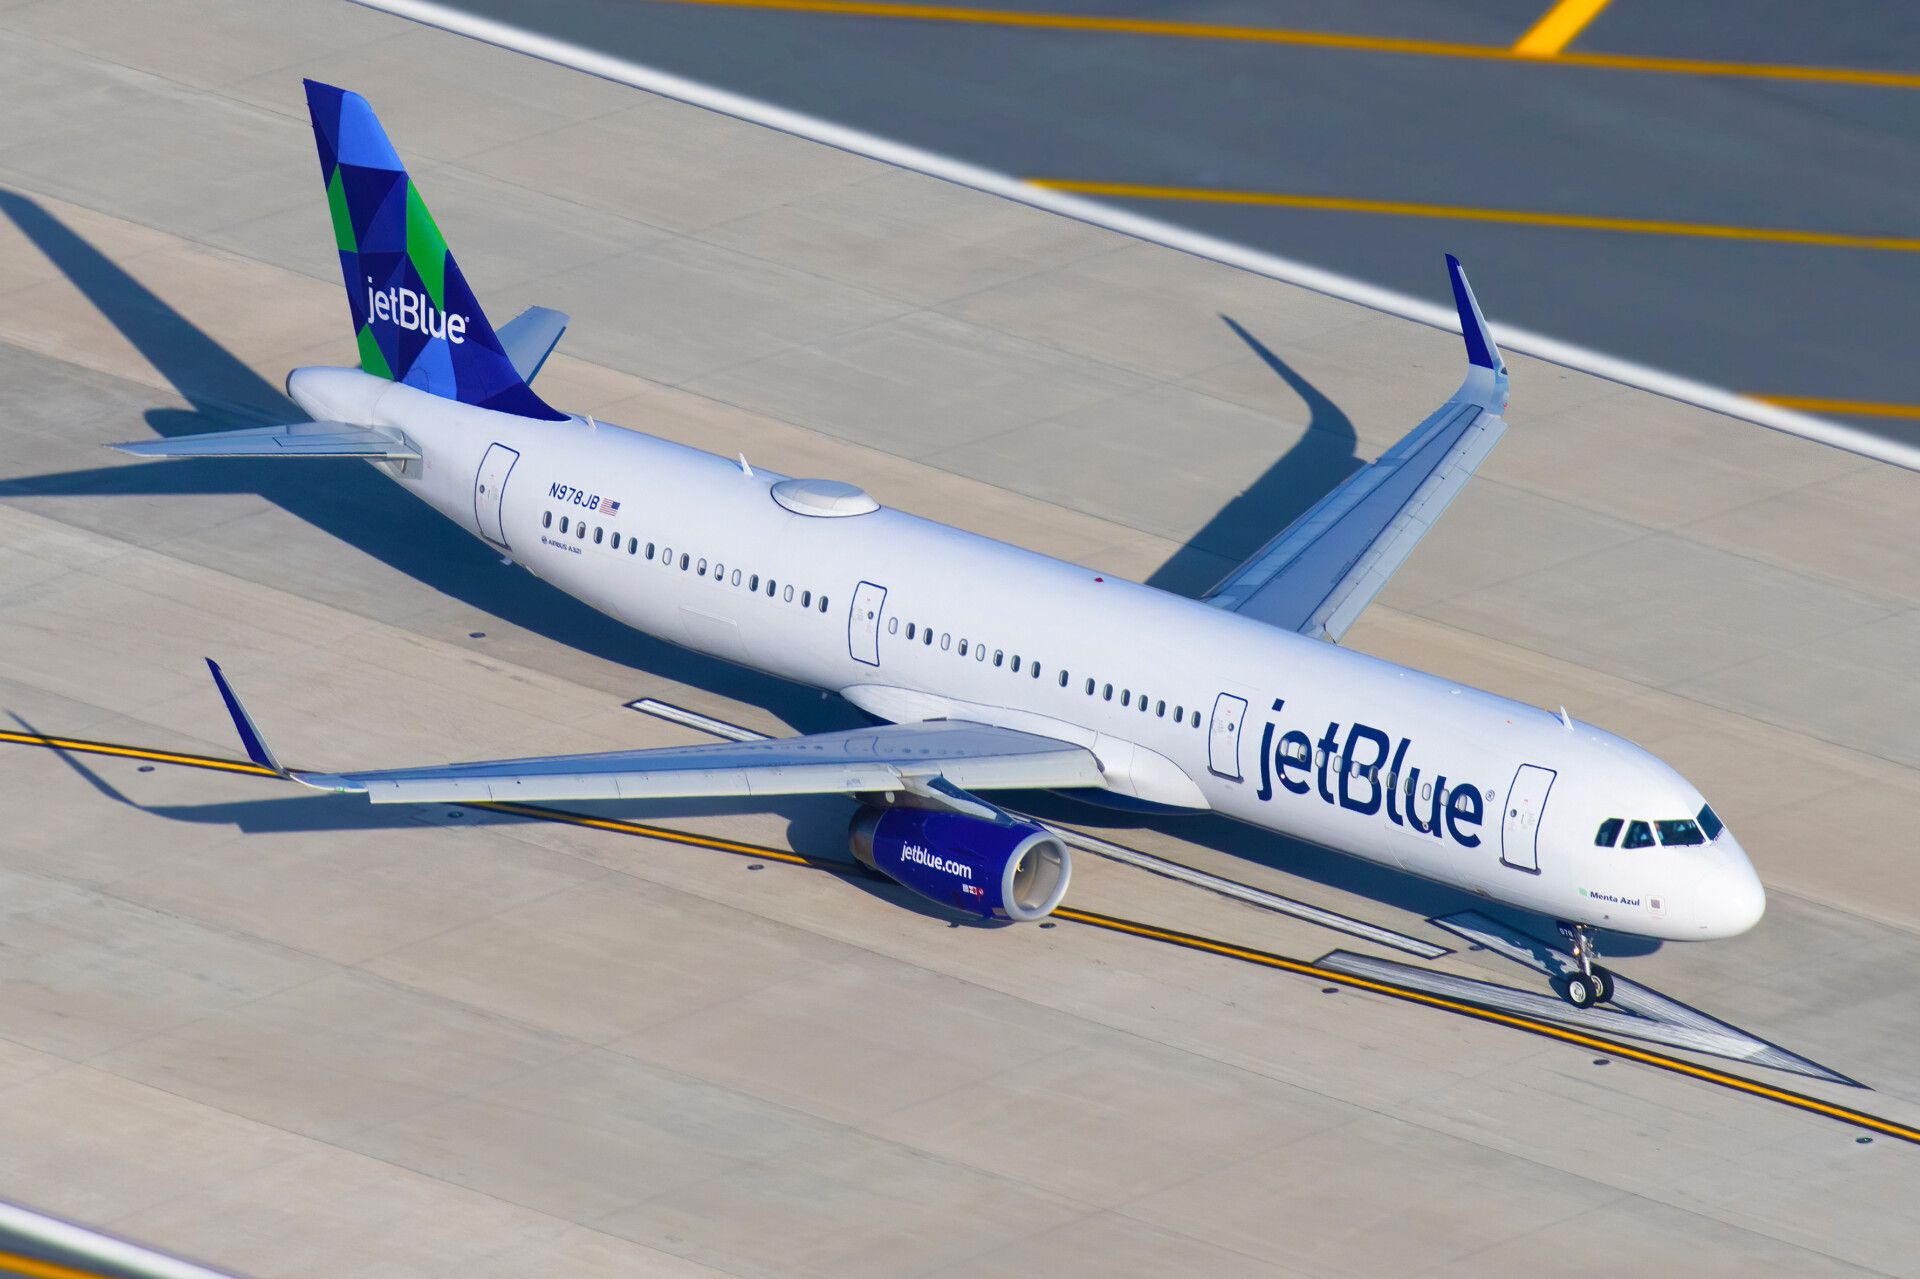 JetBlue A321